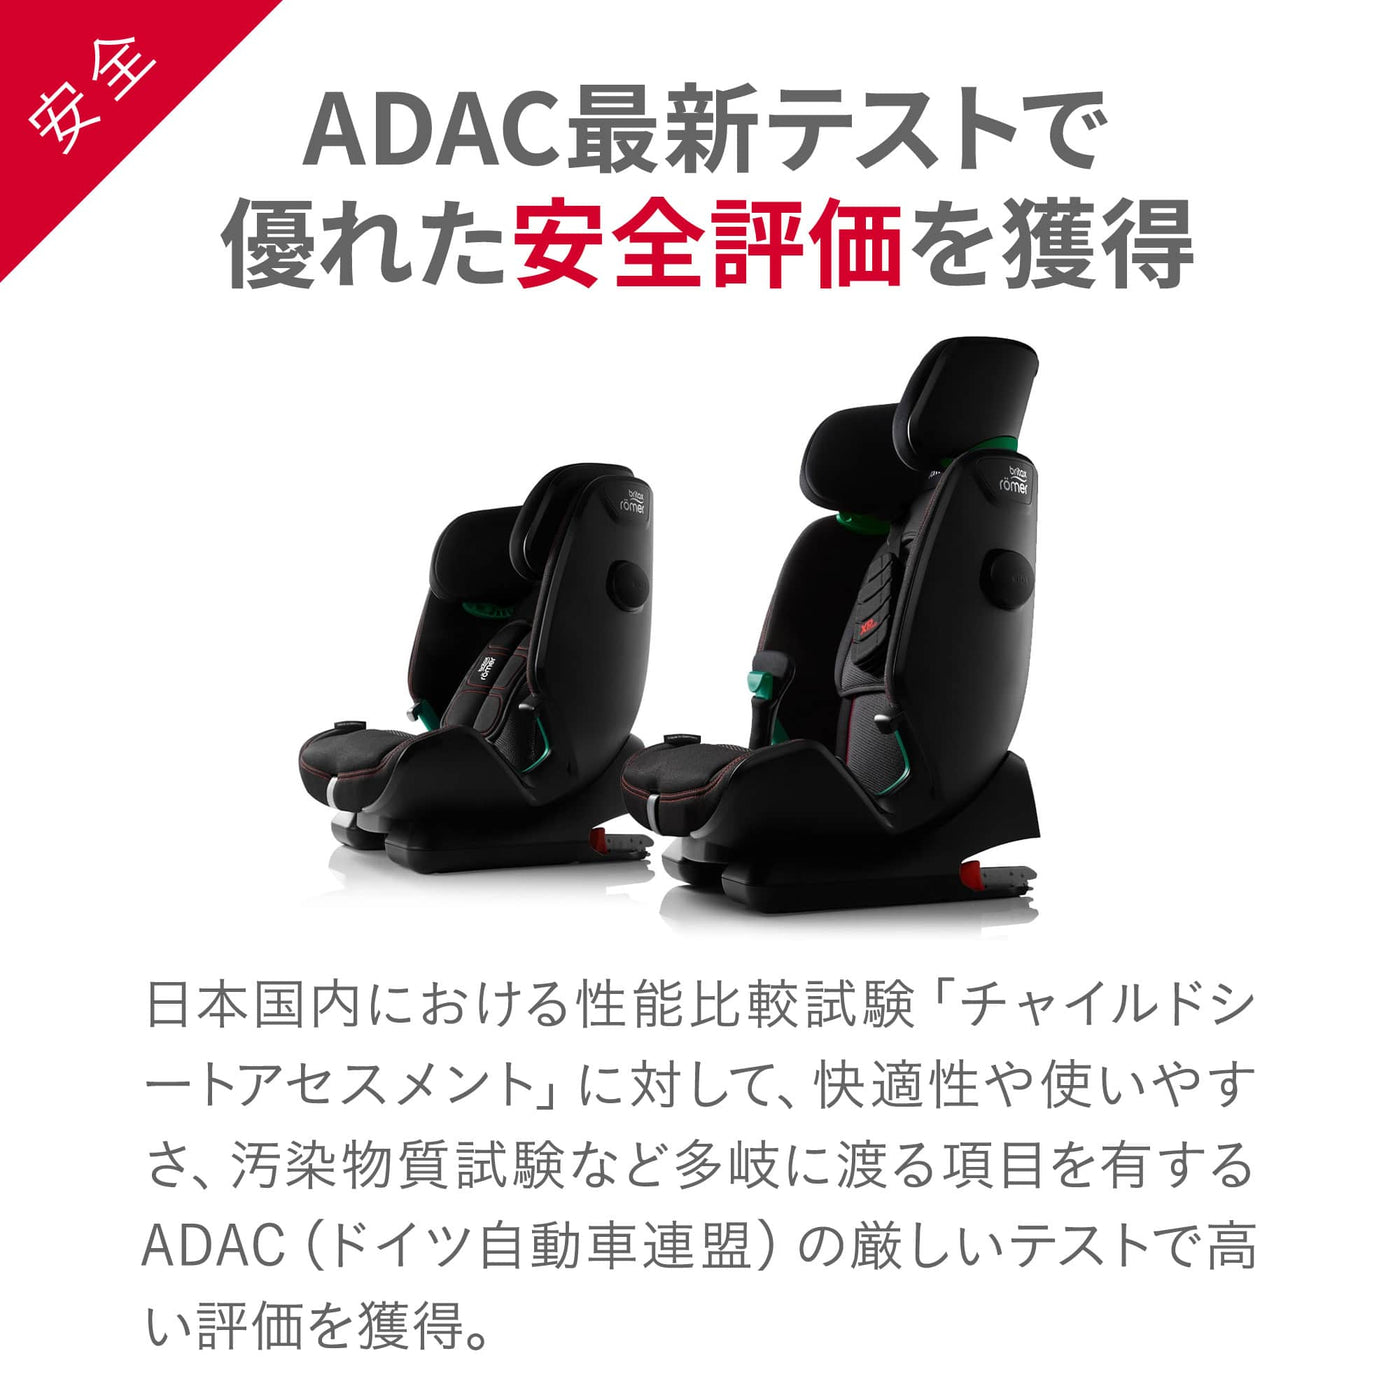 【ADAC最新テストで優れた安全評価を獲得】日本国内における性能比較試験「チャイルドシートアセスメント」に対して、快適性や使いやすさ、汚染物質試験など多岐に渡る項目を有するADAC（ドイツ自動車連盟）の厳しいテストで高い評価を獲得。